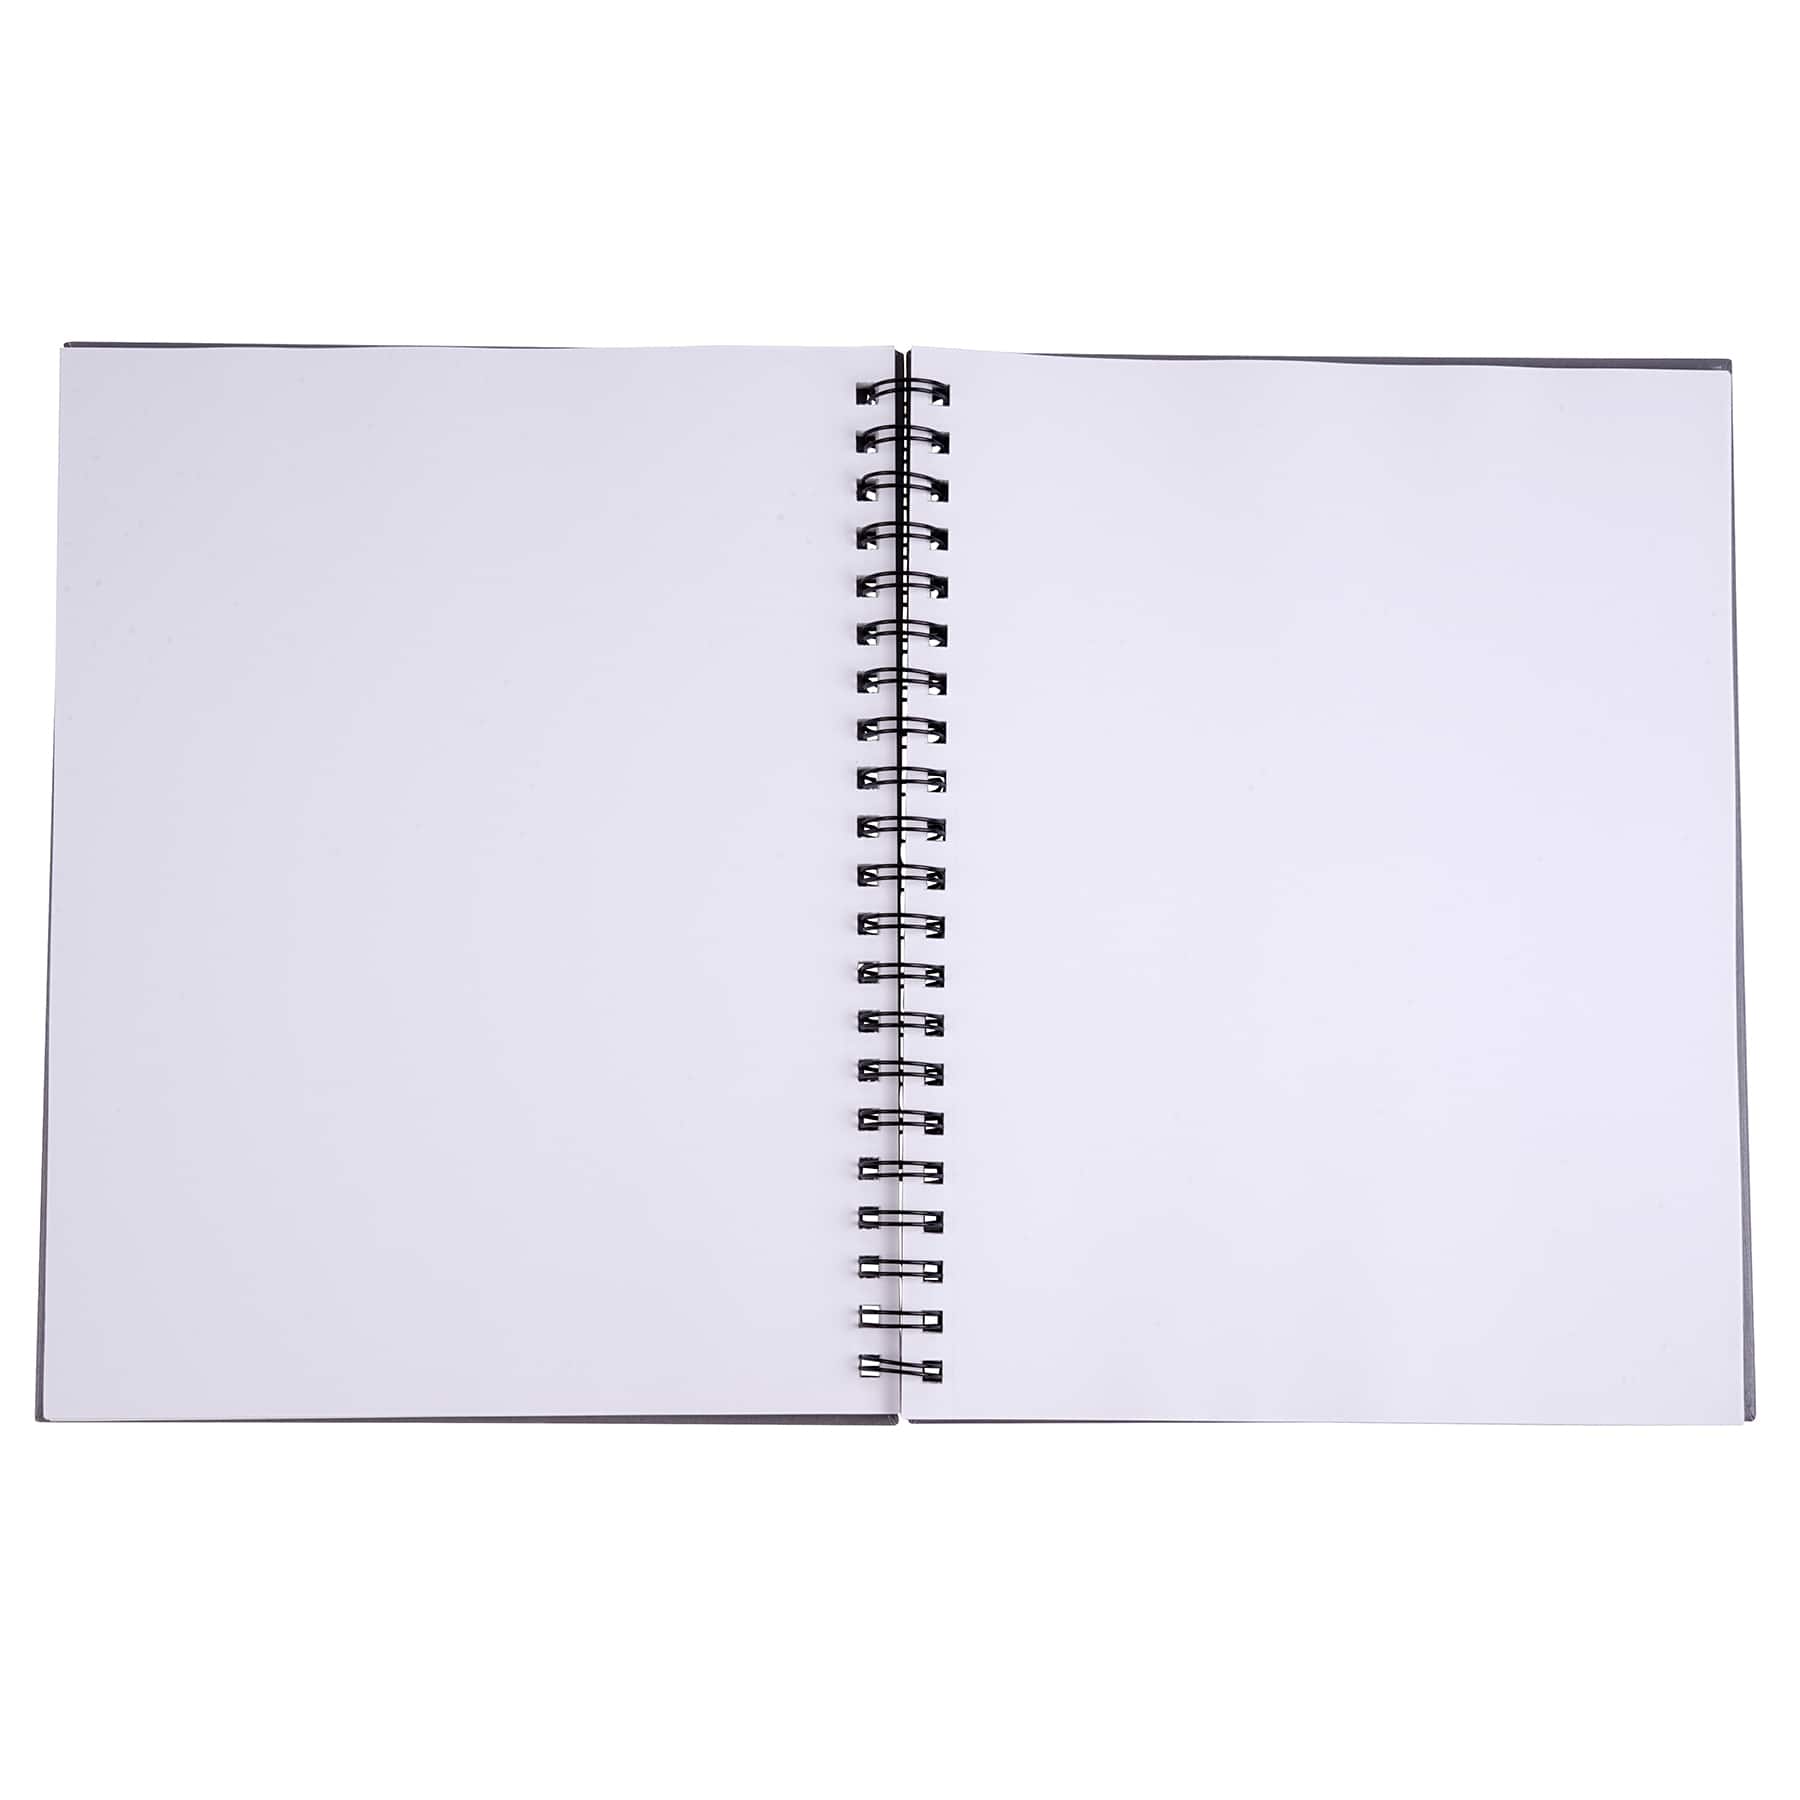 12 Pack: Gray Wirebound Sketchbook by Artist&#x27;s Loft&#x2122;, 8.5&#x22; x 11&#x22;